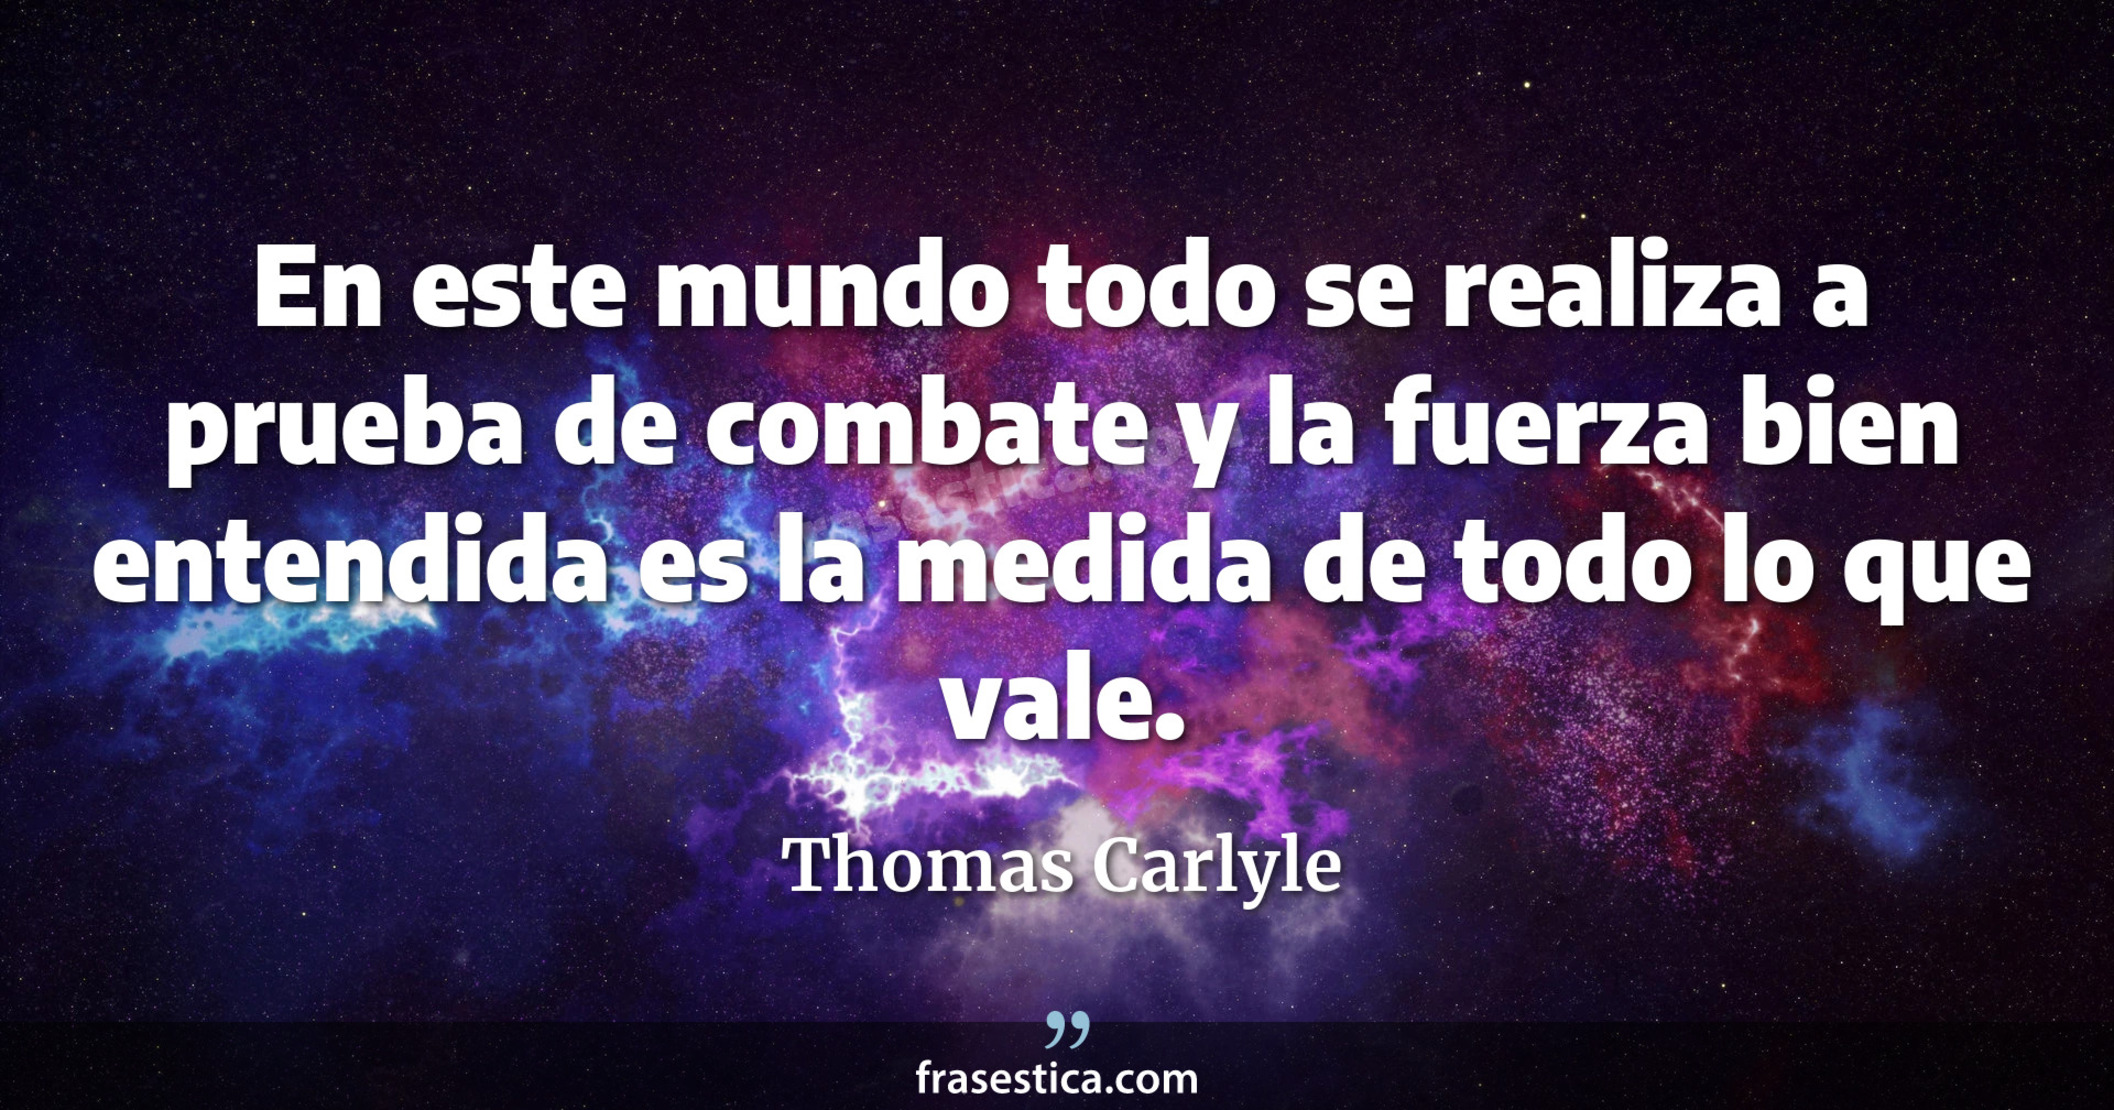 En este mundo todo se realiza a prueba de combate y la fuerza bien entendida es la medida de todo lo que vale. - Thomas Carlyle